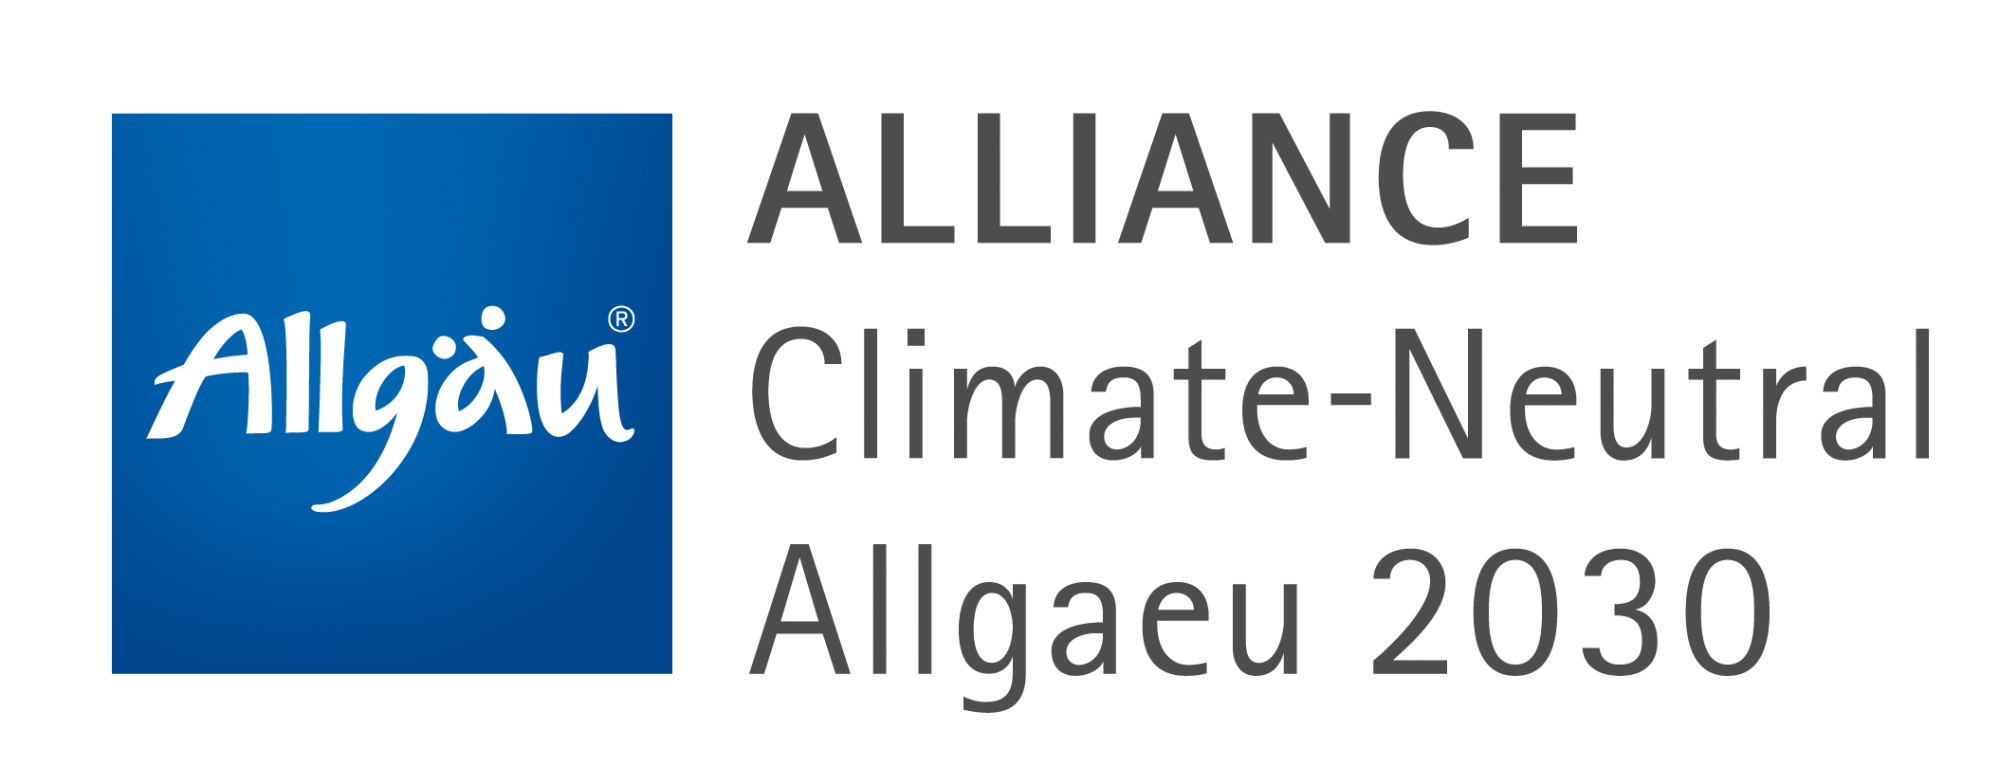 Allgaeu_Logo_Alliance2030_3D_RGB